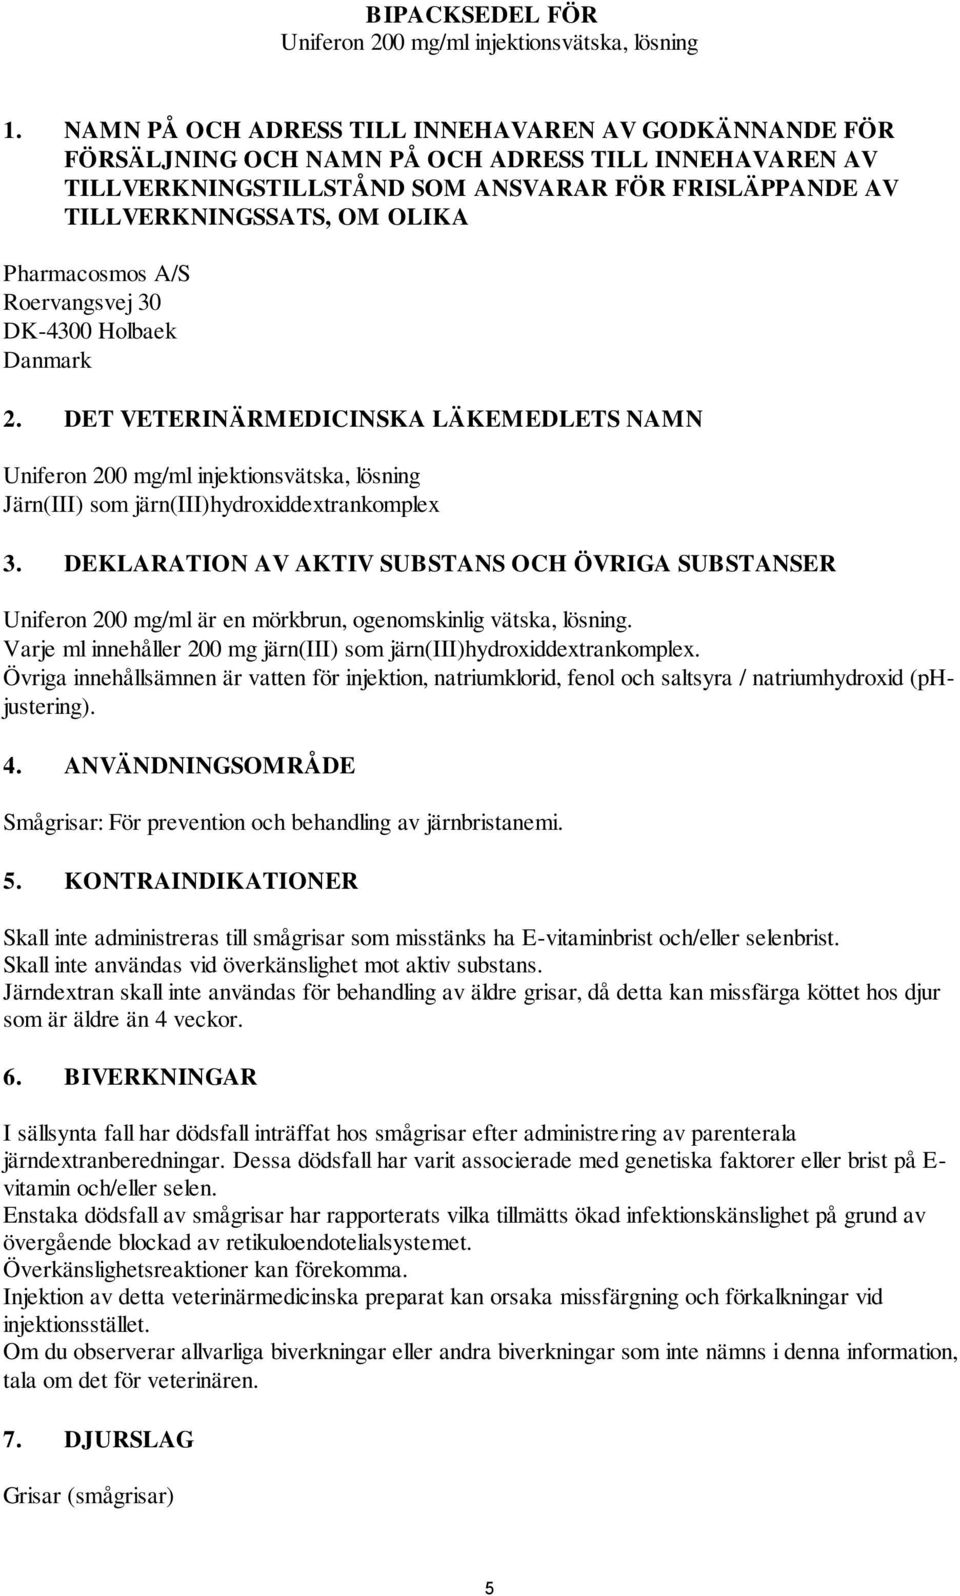 Pharmacosmos A/S Roervangsvej 30 DK-4300 Holbaek Danmark 2. DET VETERINÄRMEDICINSKA LÄKEMEDLETS NAMN Uniferon 200 mg/ml injektionsvätska, lösning Järn(III) som järn(iii)hydroxiddextrankomplex 3.